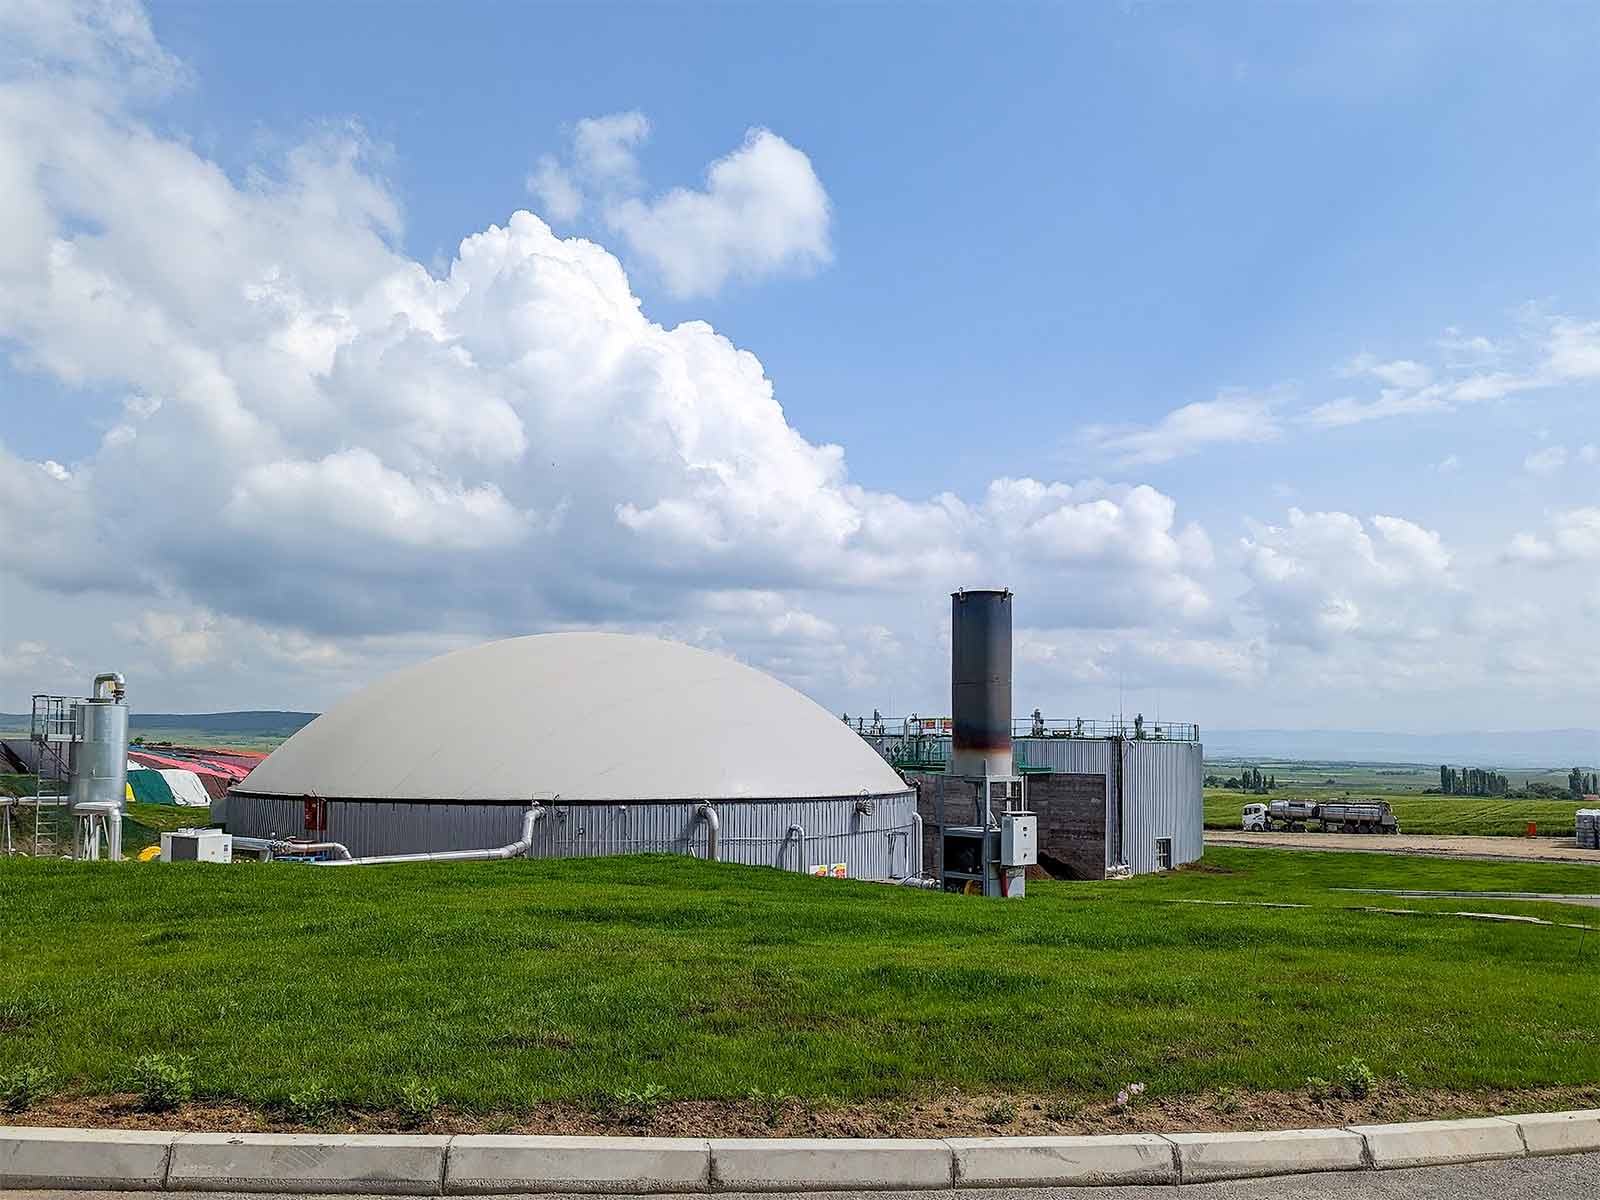 Das in den Fermentern gesammelte Biogas wird zur Erzeugung von Strom und Wärmeenergie genutzt. Als Nebenprodukt der biologischen Prozesse fallen jährlich rund 30.000 Tonnen natürlicher Dünger an. (Foto: Bereitgestellt von der Feroinvest Group)